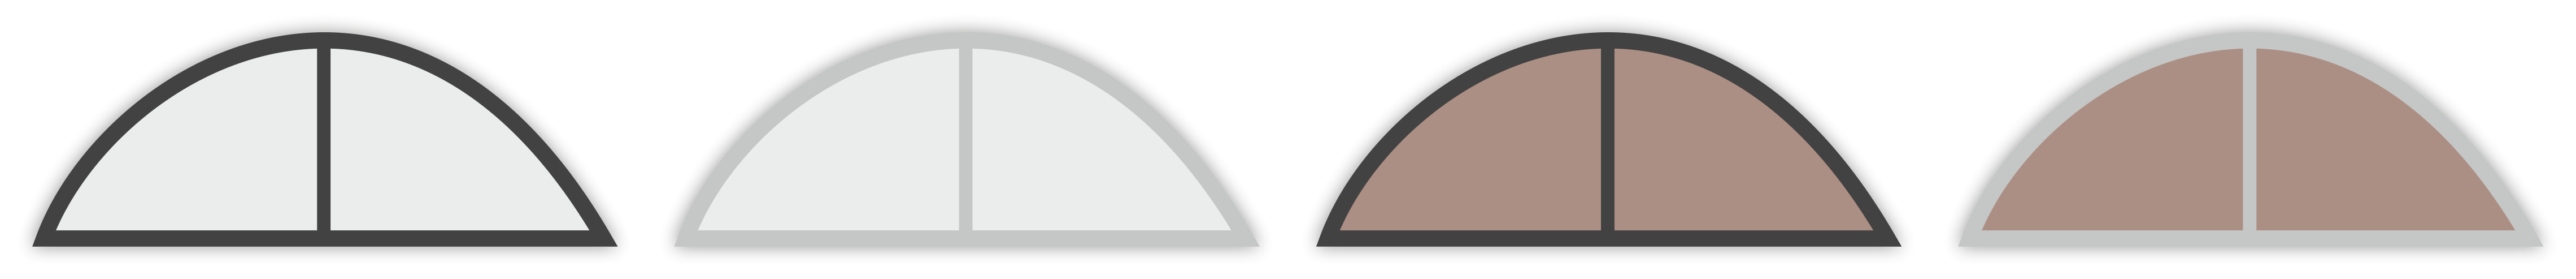 Barvy polykarbonátu (čirý, kouřový bronz) a barva konstrukce (antracit, elox, plný)